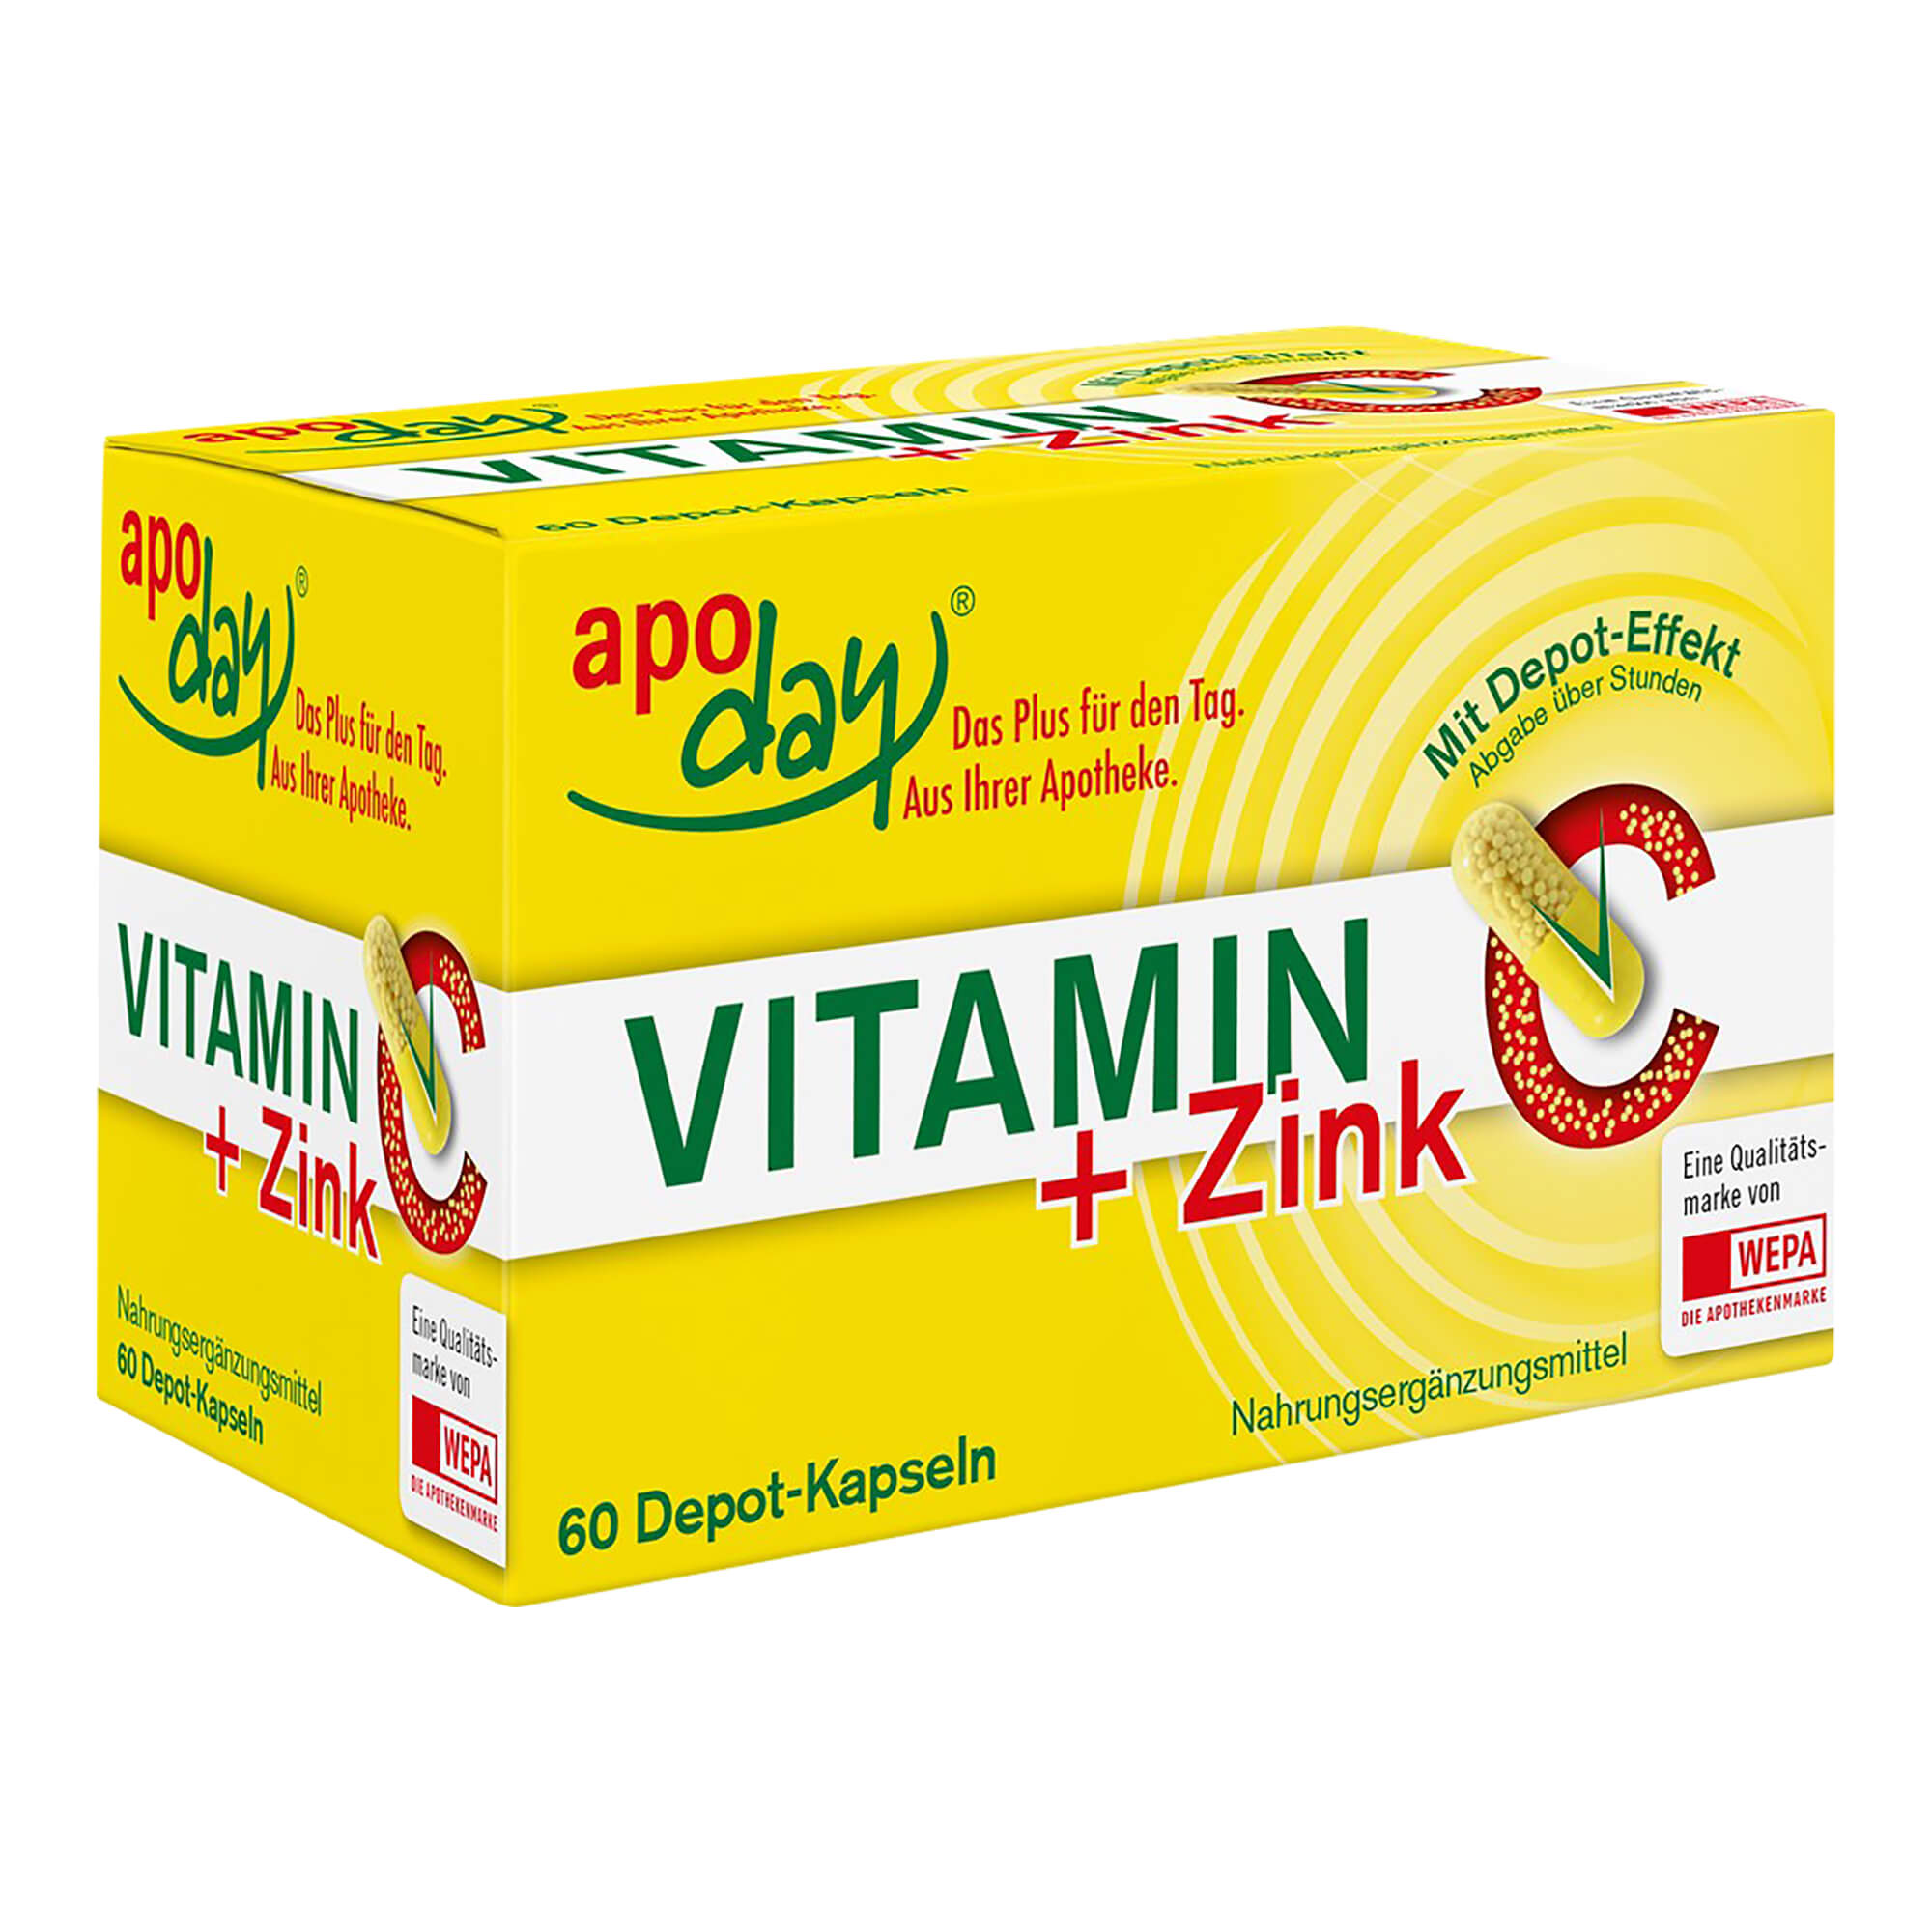 Nahrungsergänzungsmittel mit Vitamin C plus Zink.